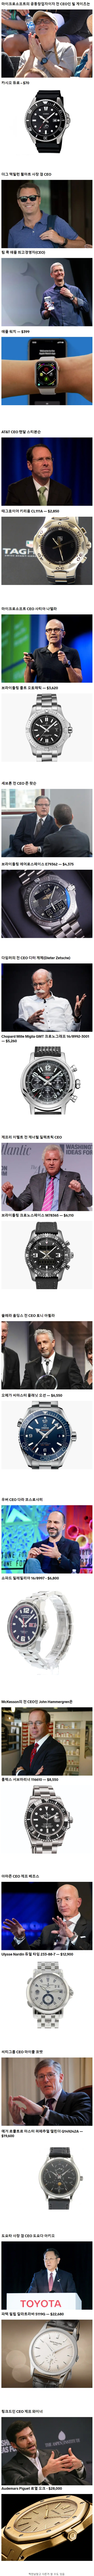 해외 CEO들이 착용하는 시계